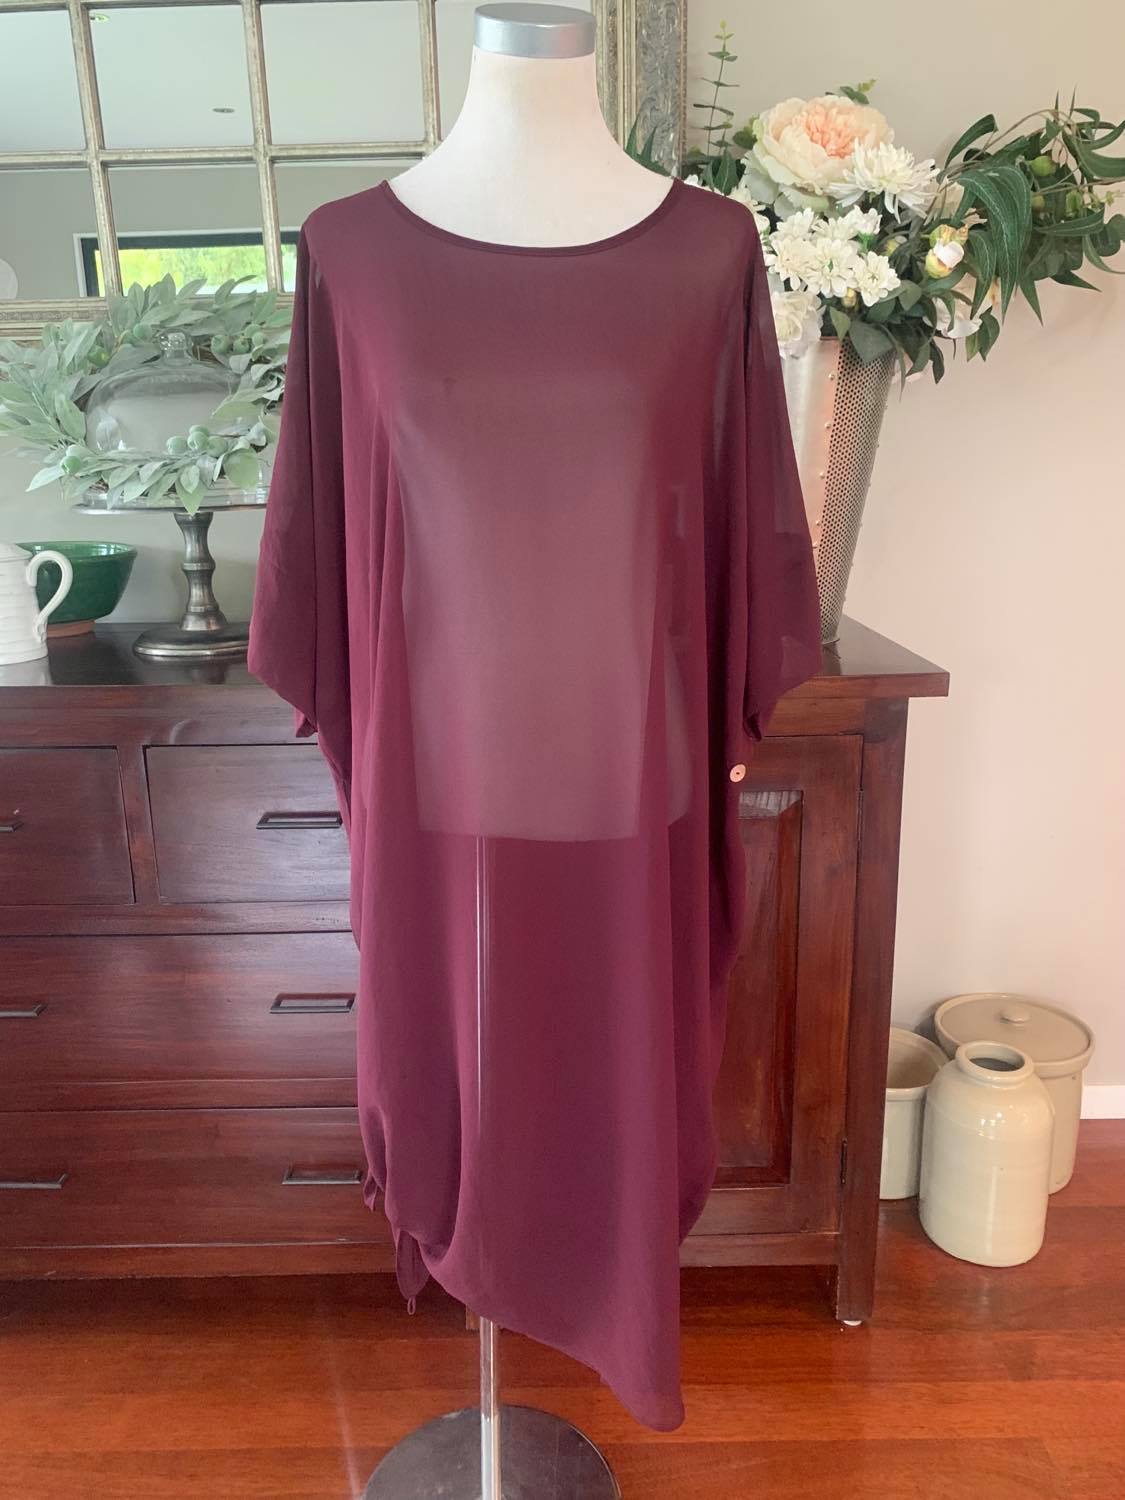 Lotti Plain Tunic/Dress OSFA 7 Colour Options